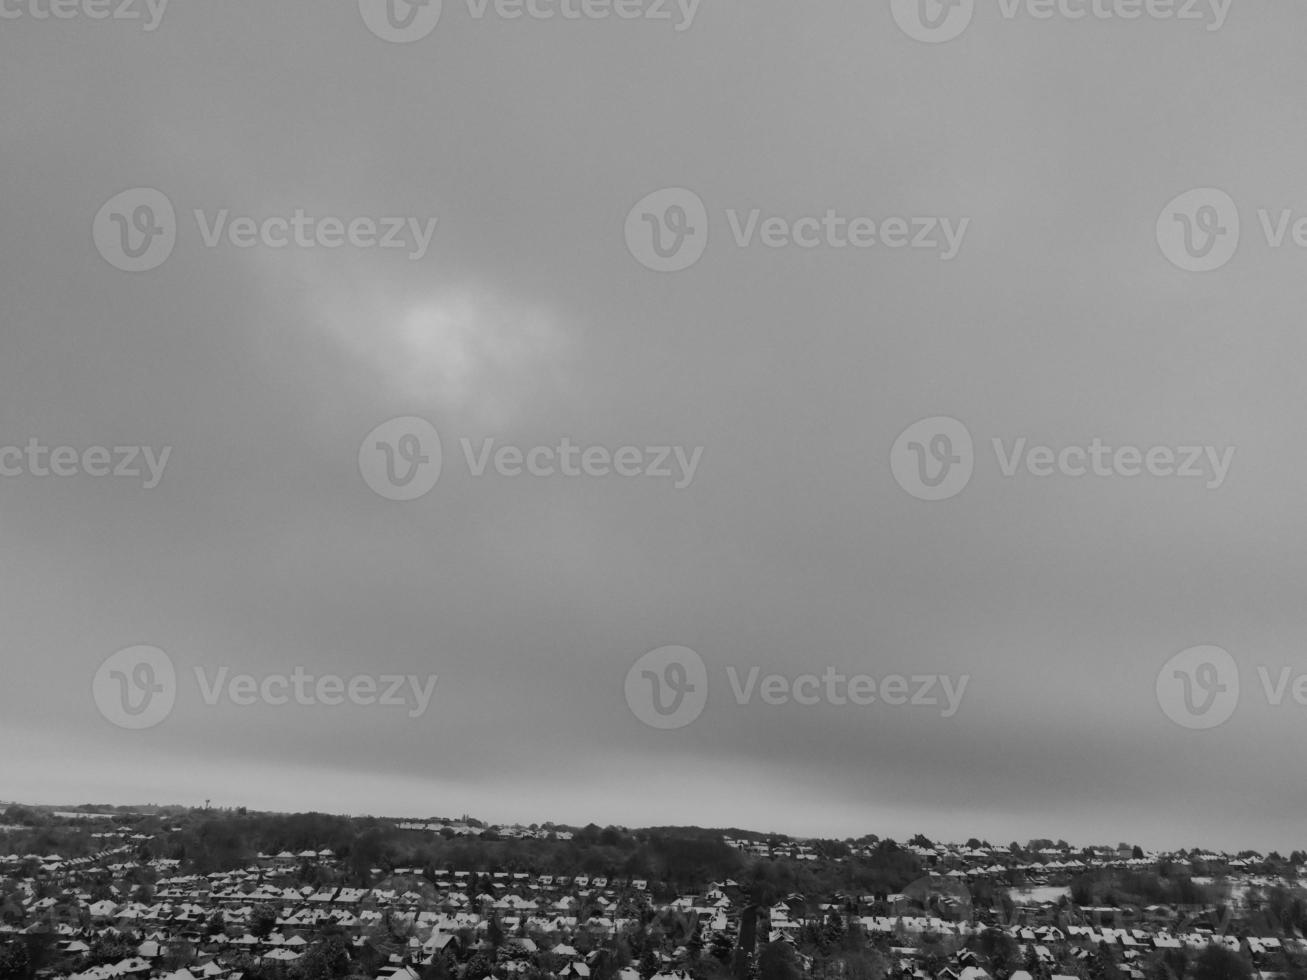 vue grand angle de la ville en noir et blanc classique photo